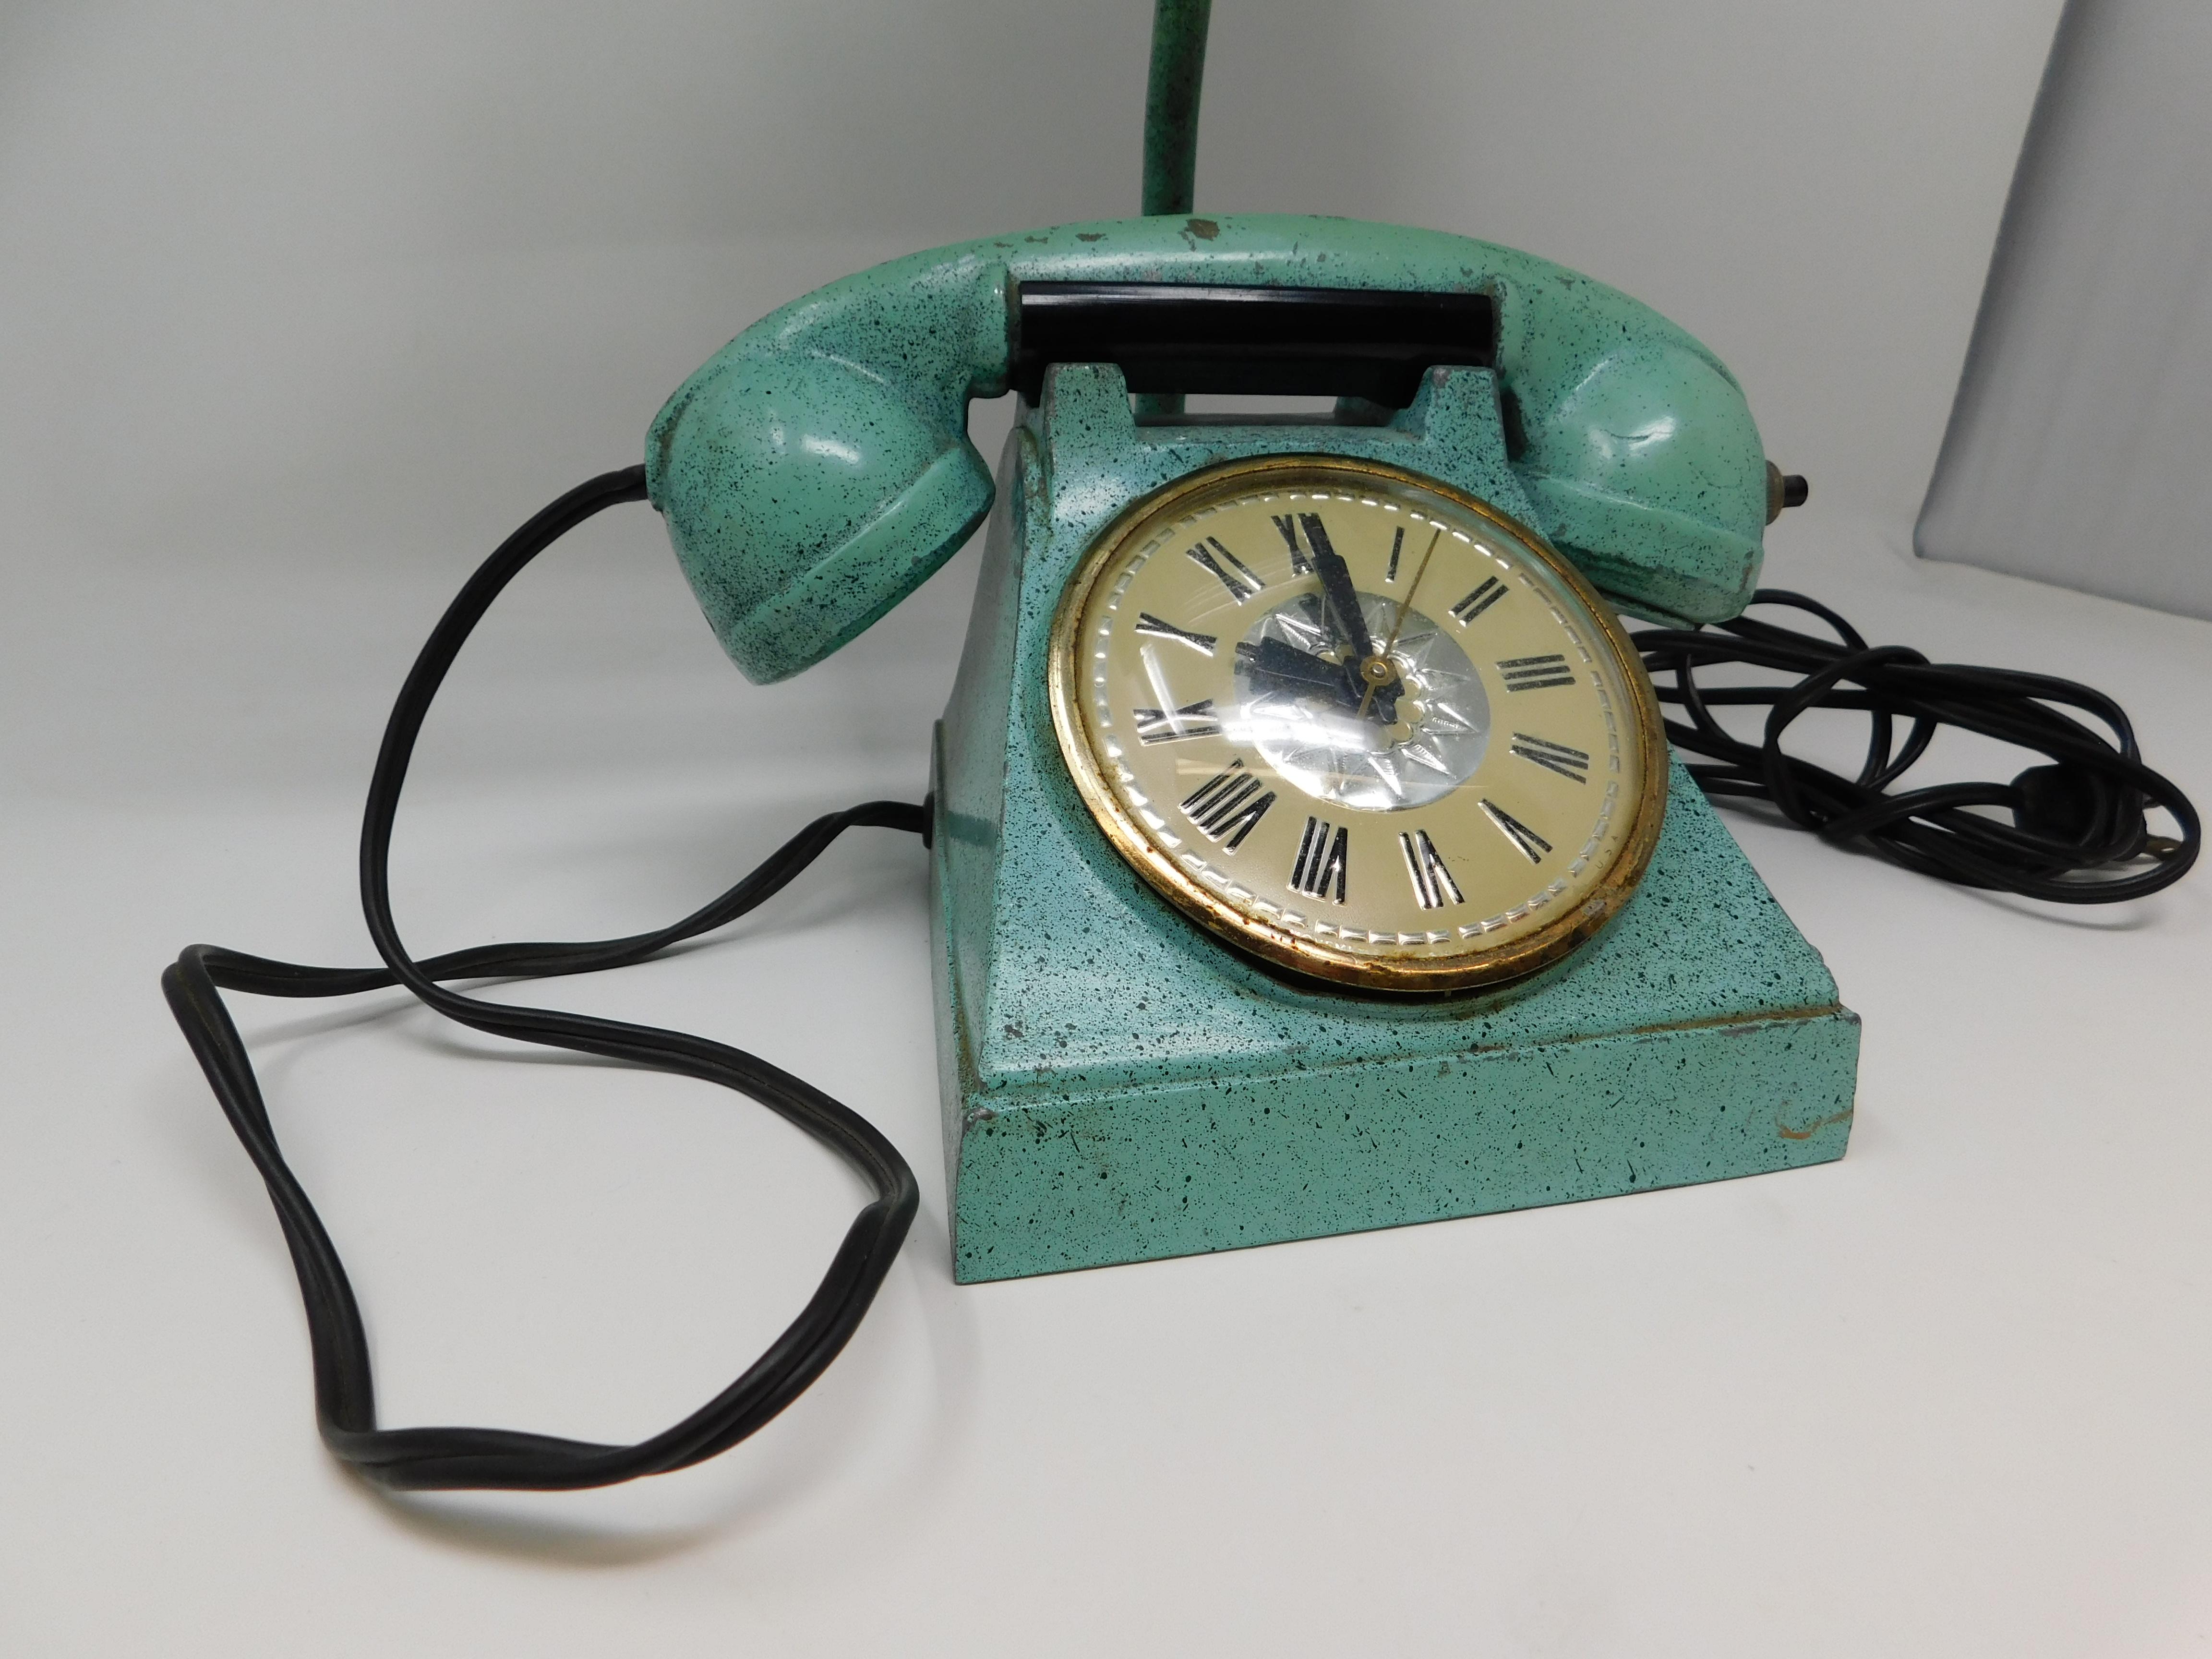 Cast Vintage Trea Boye Kitsch Lighter Telephone Clock Teal Lamp Venetian Blind Shade